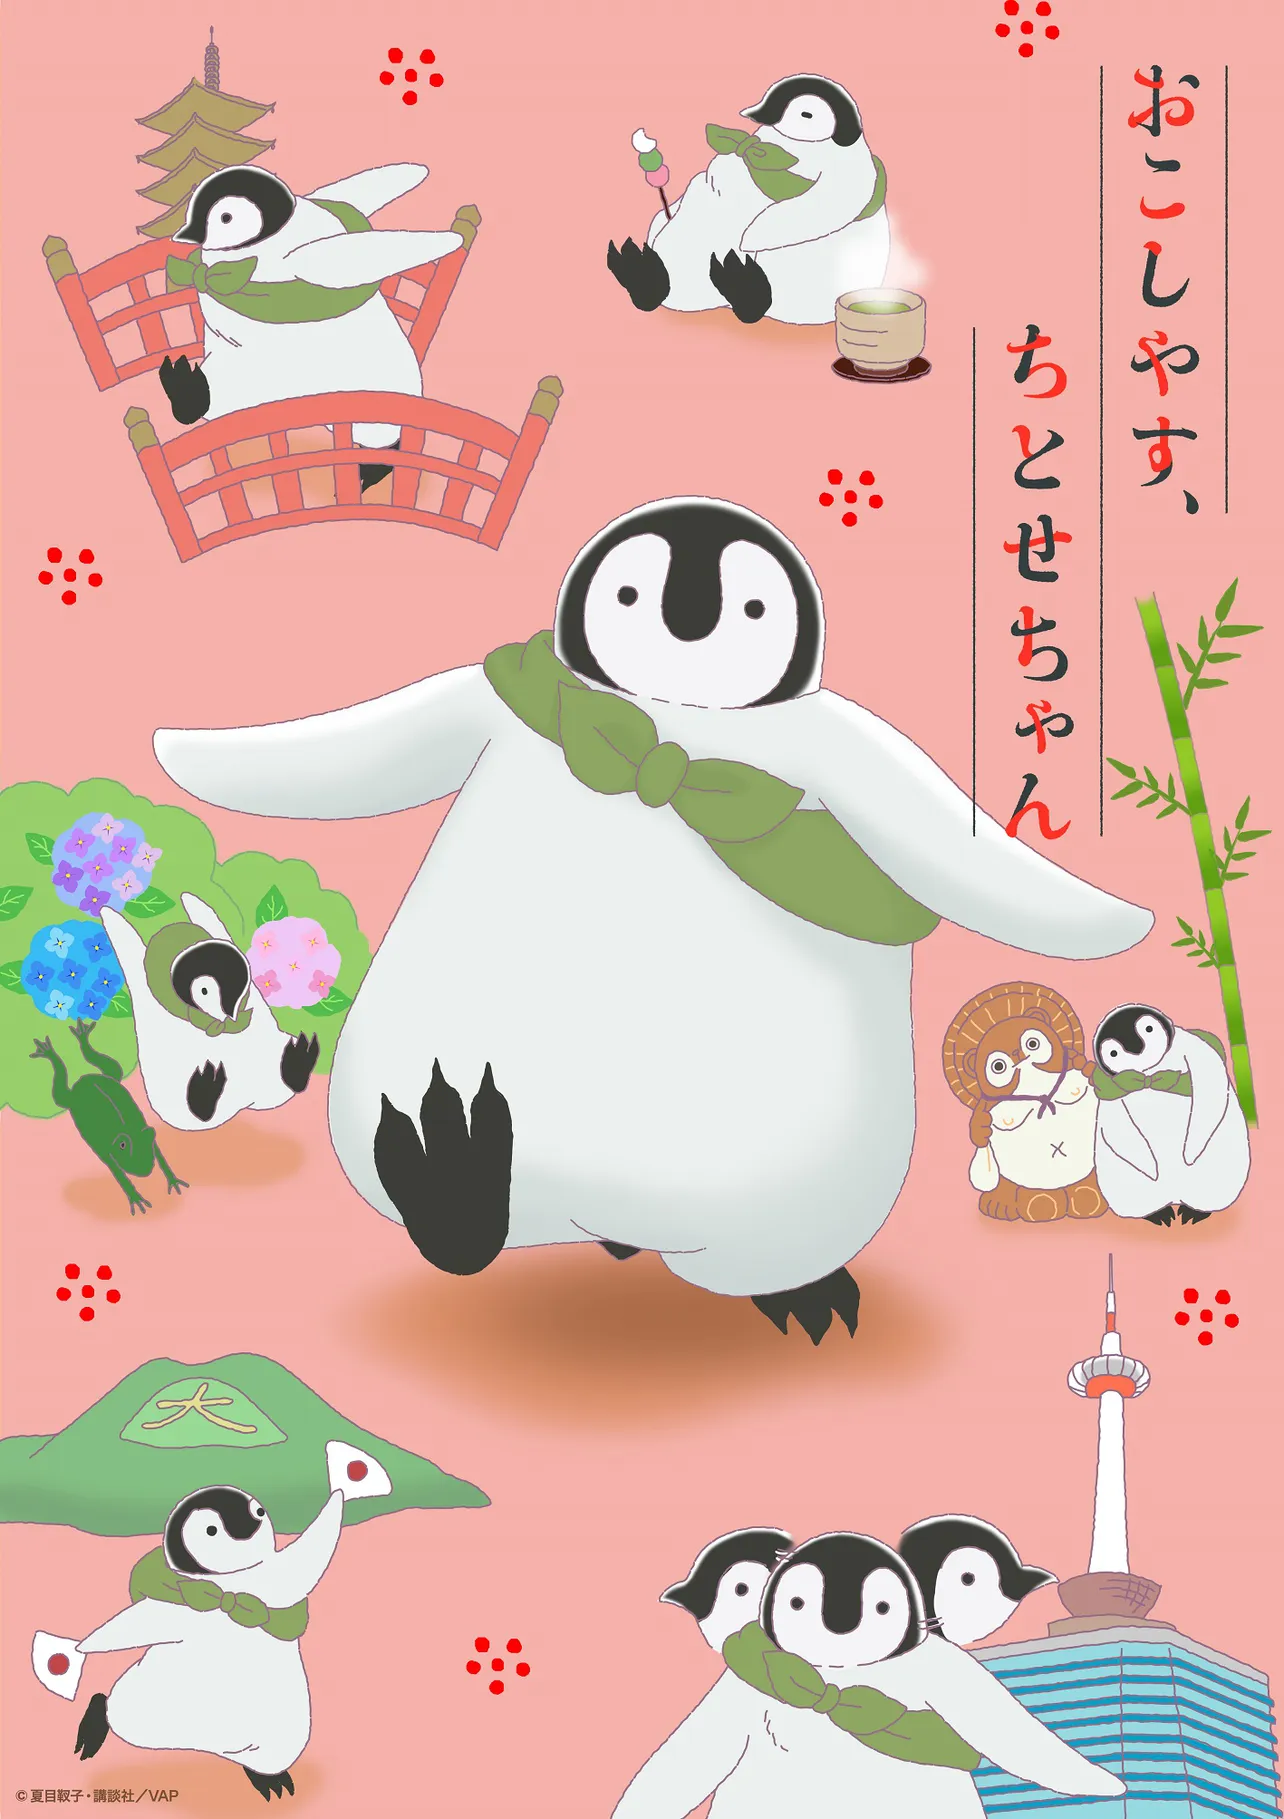 画像・写真 ペンギン×京都観光「おこしやす、ちとせちゃん」最新PV解禁 